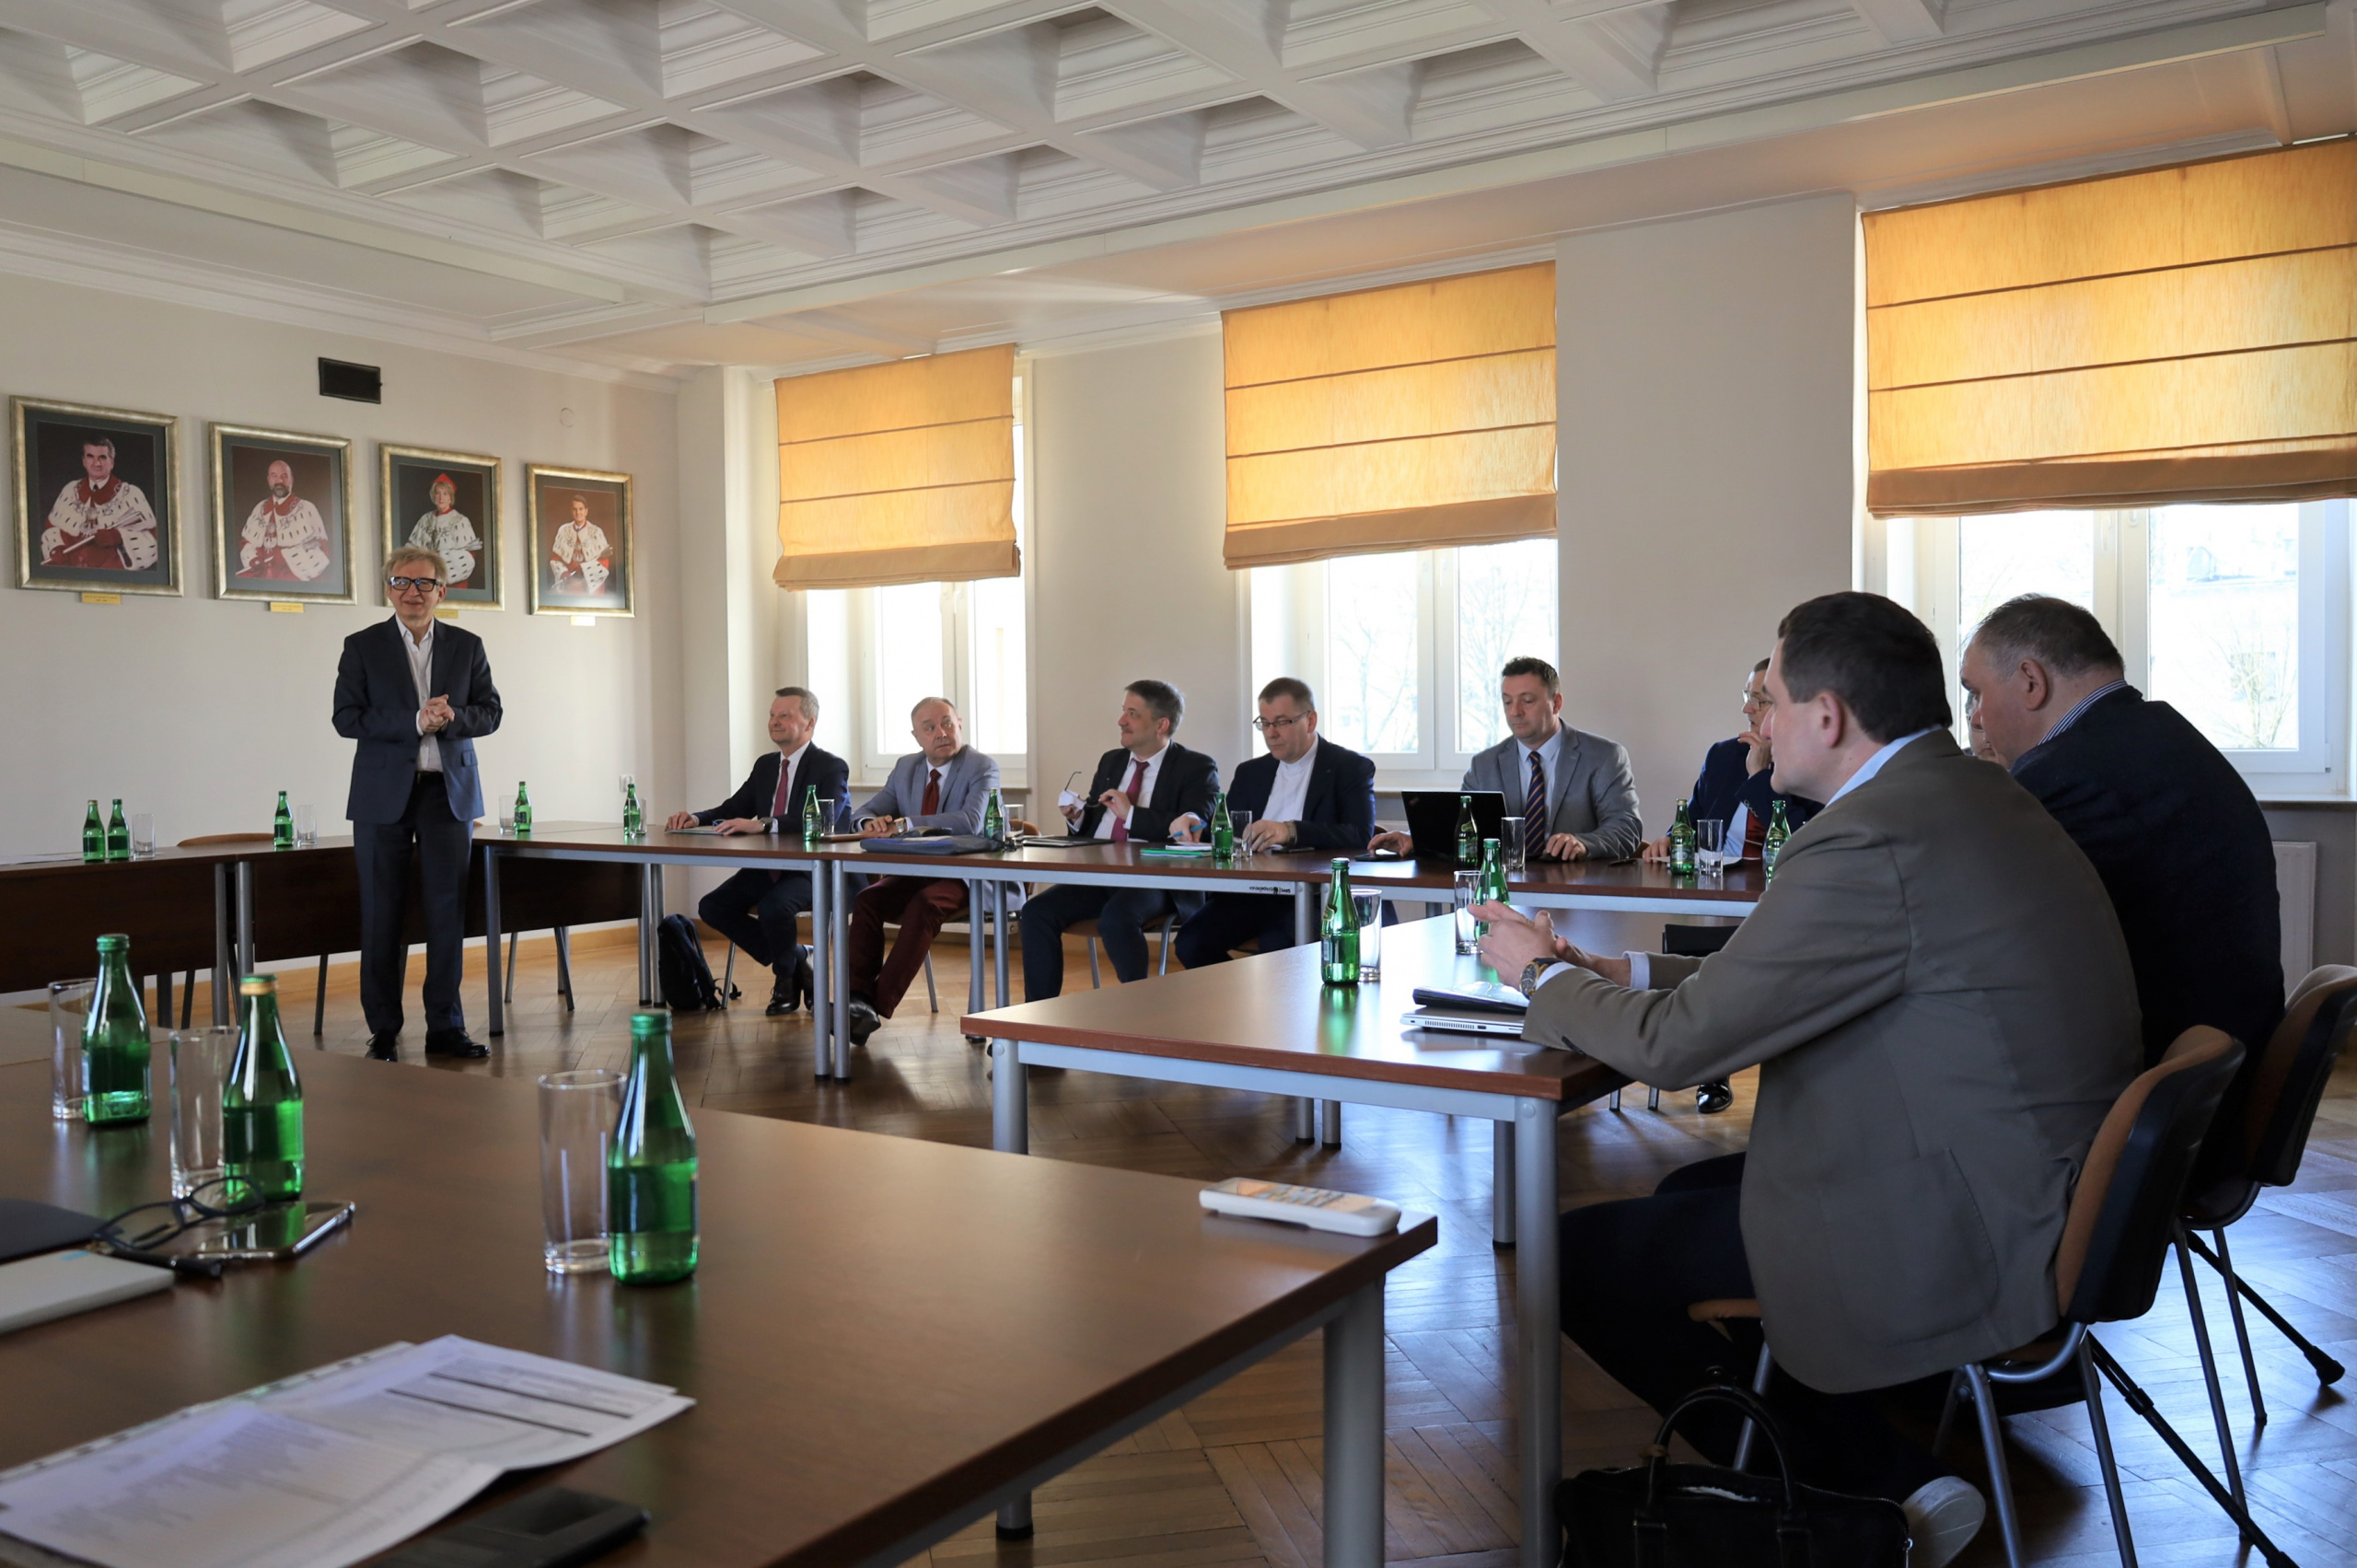 Obrady toczyły się pod przewodnictwem Prorektora ds. Rozwoju i Finansów prof. dr. hab. Jarosława Karpacza (pierwsza osoba z lewej).